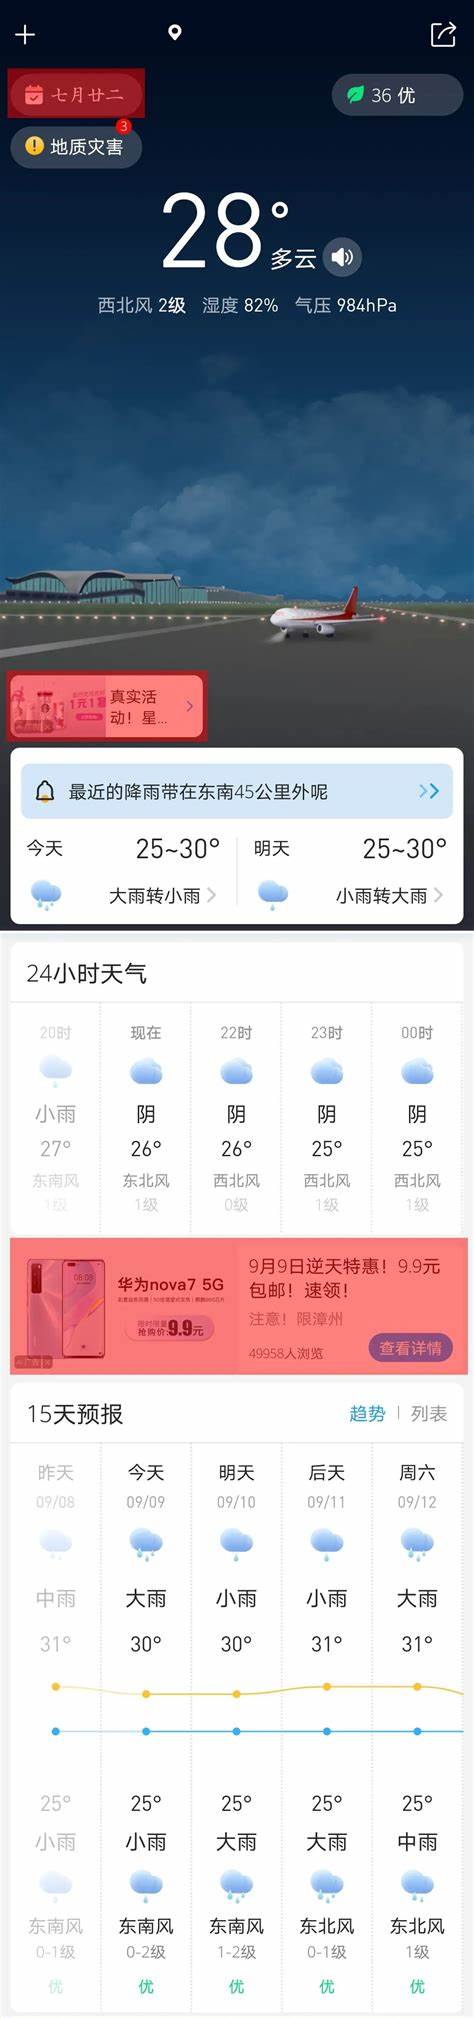 天津本月天气预报30天查询